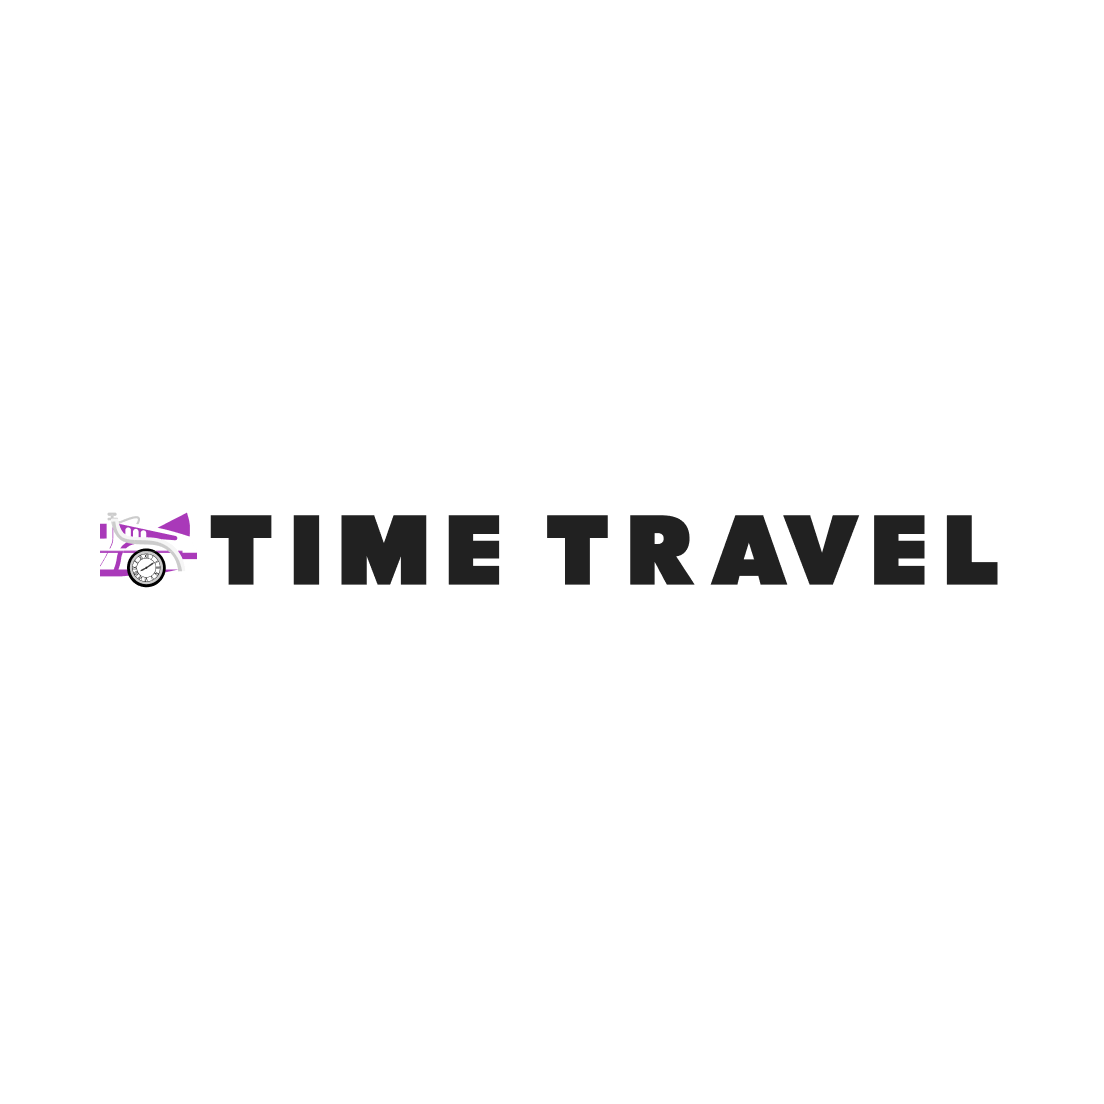 TimeTravel